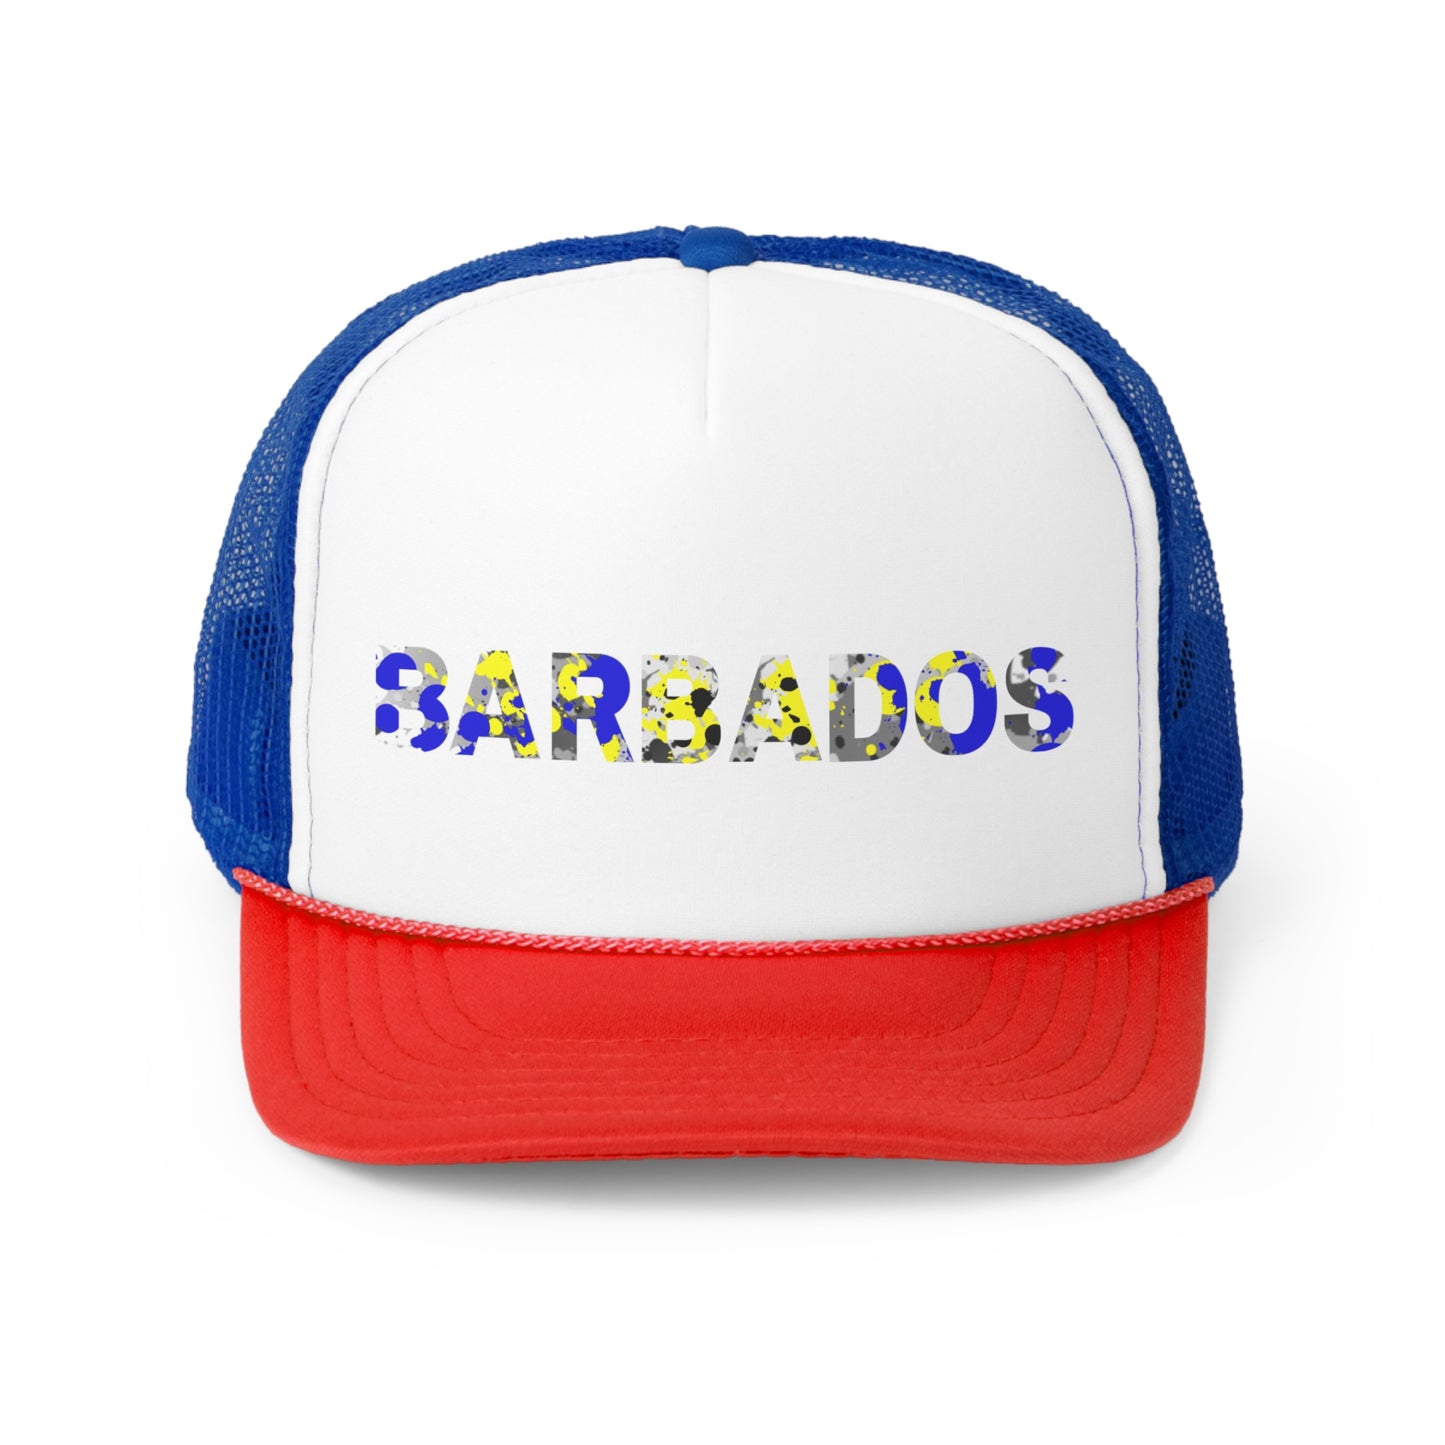 Barbados Trucker Caps